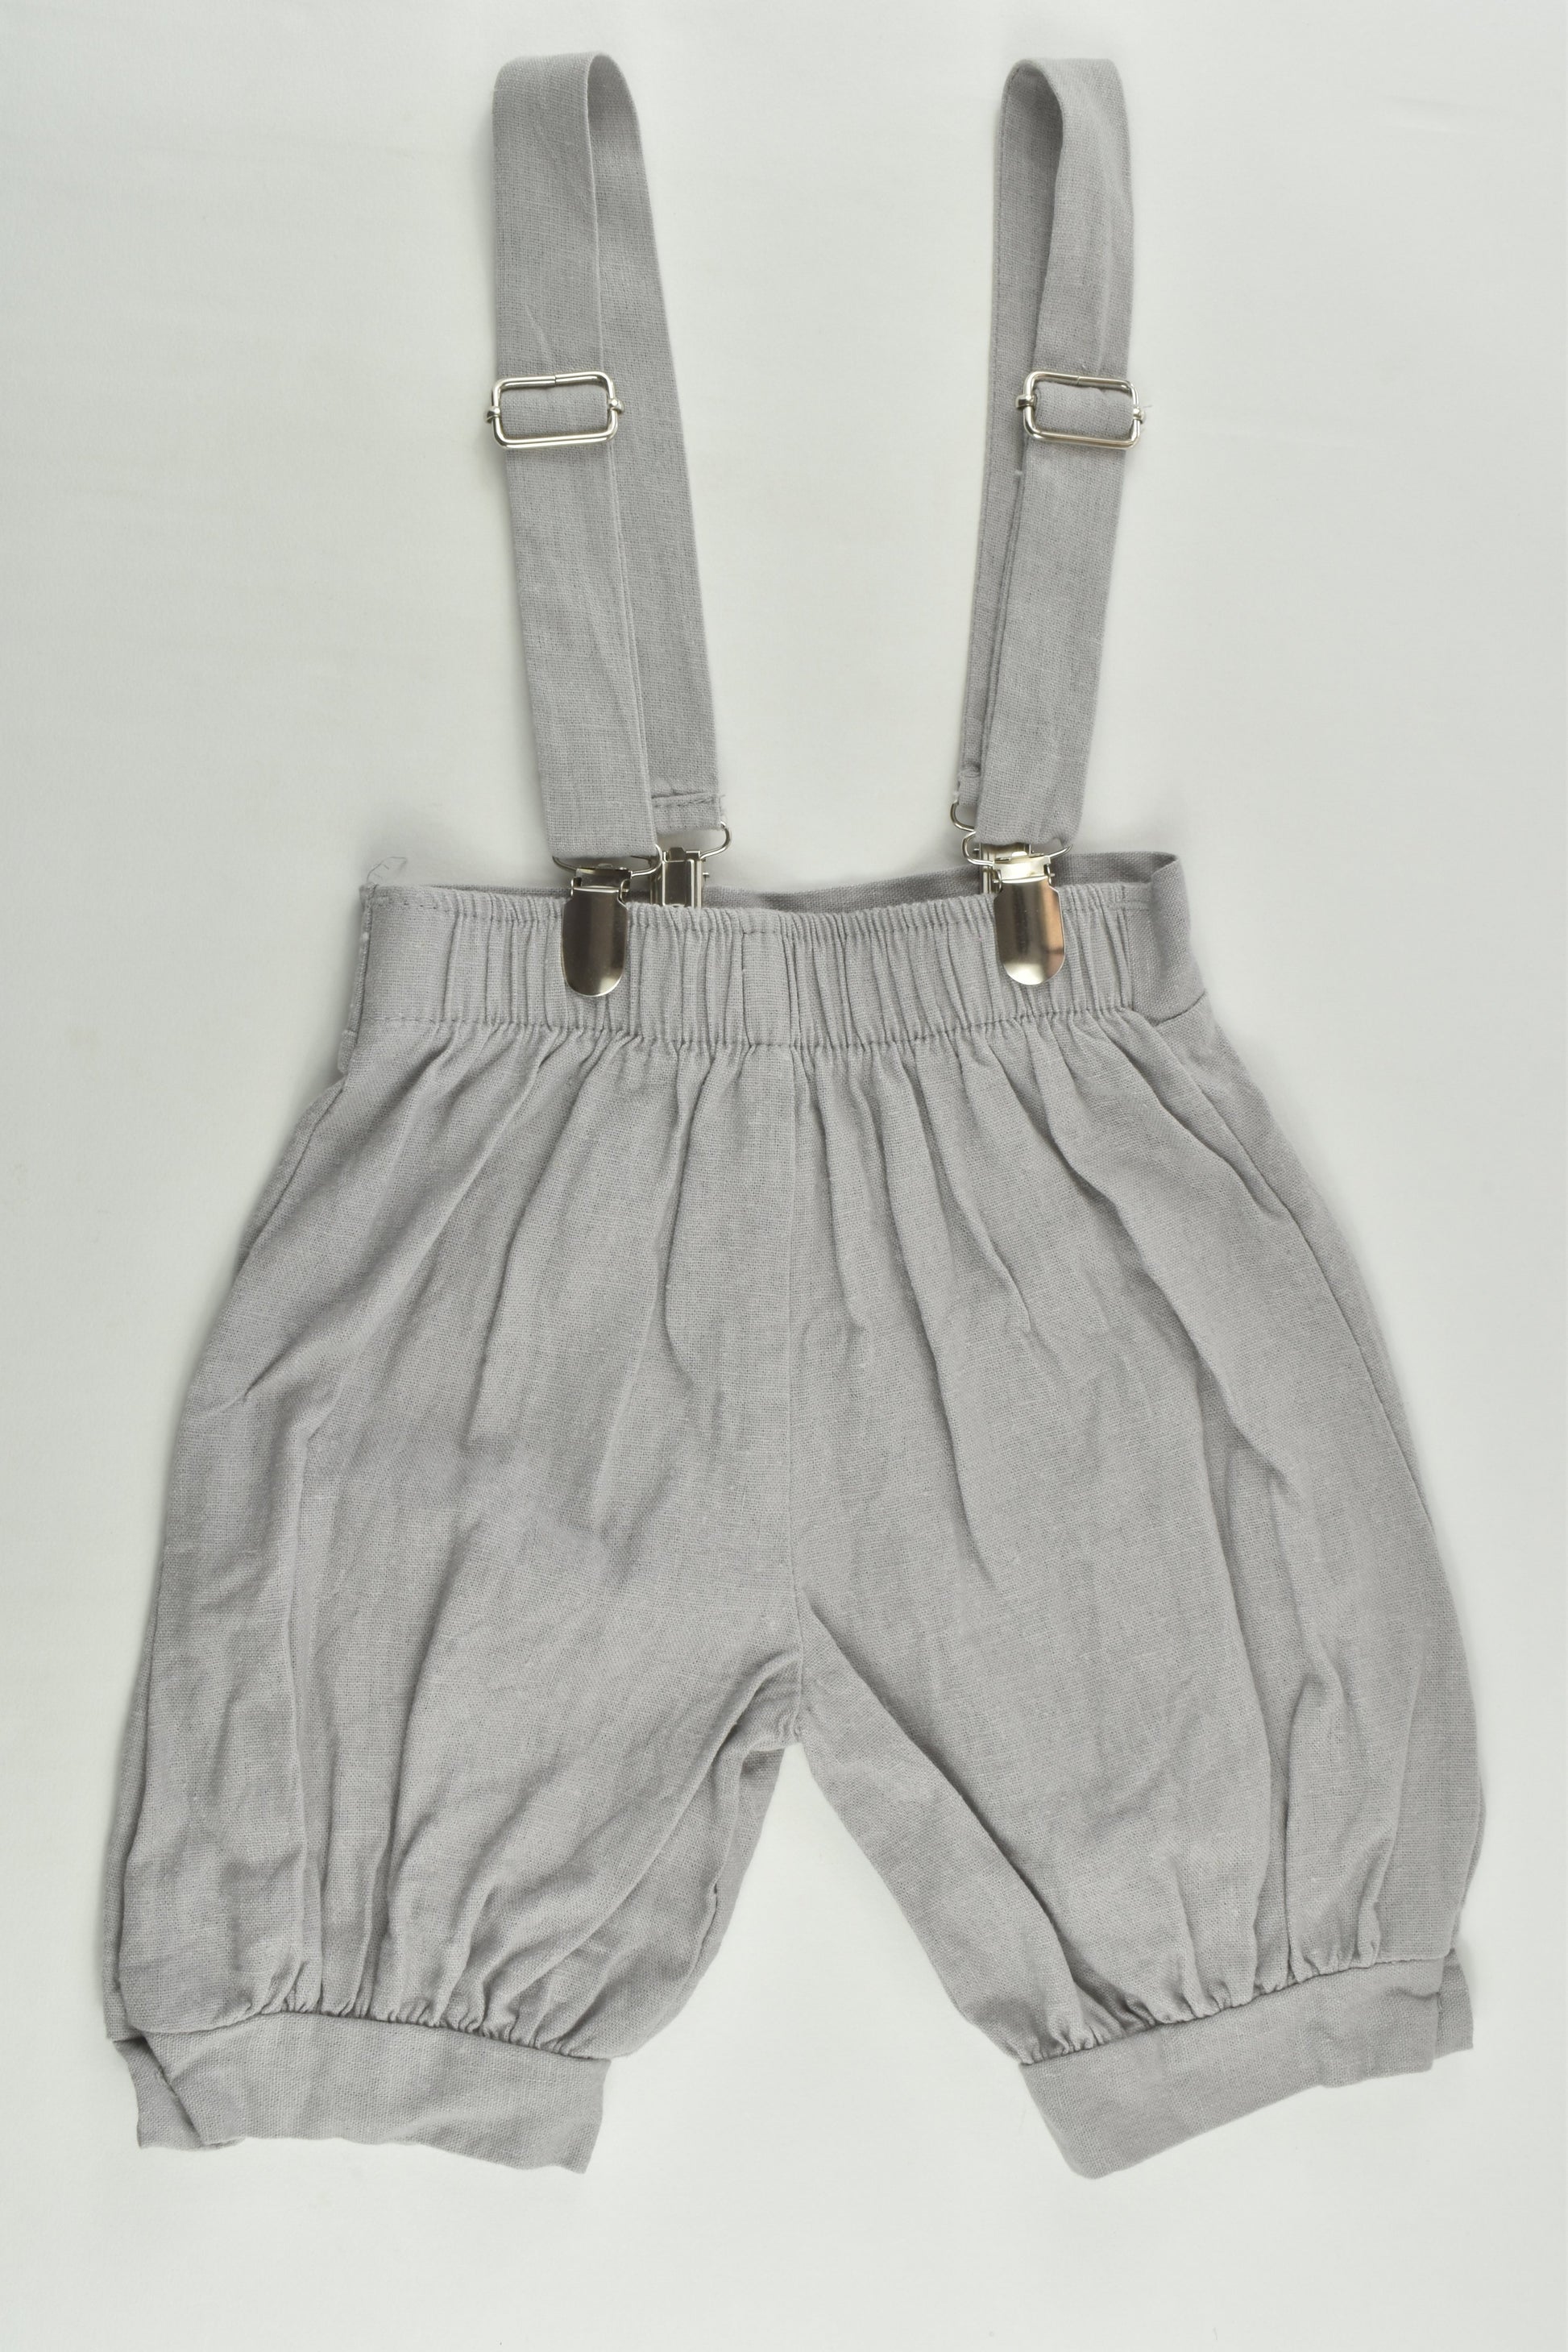 G827 Size 1 (12-18 months) Linen Suspender Shorts